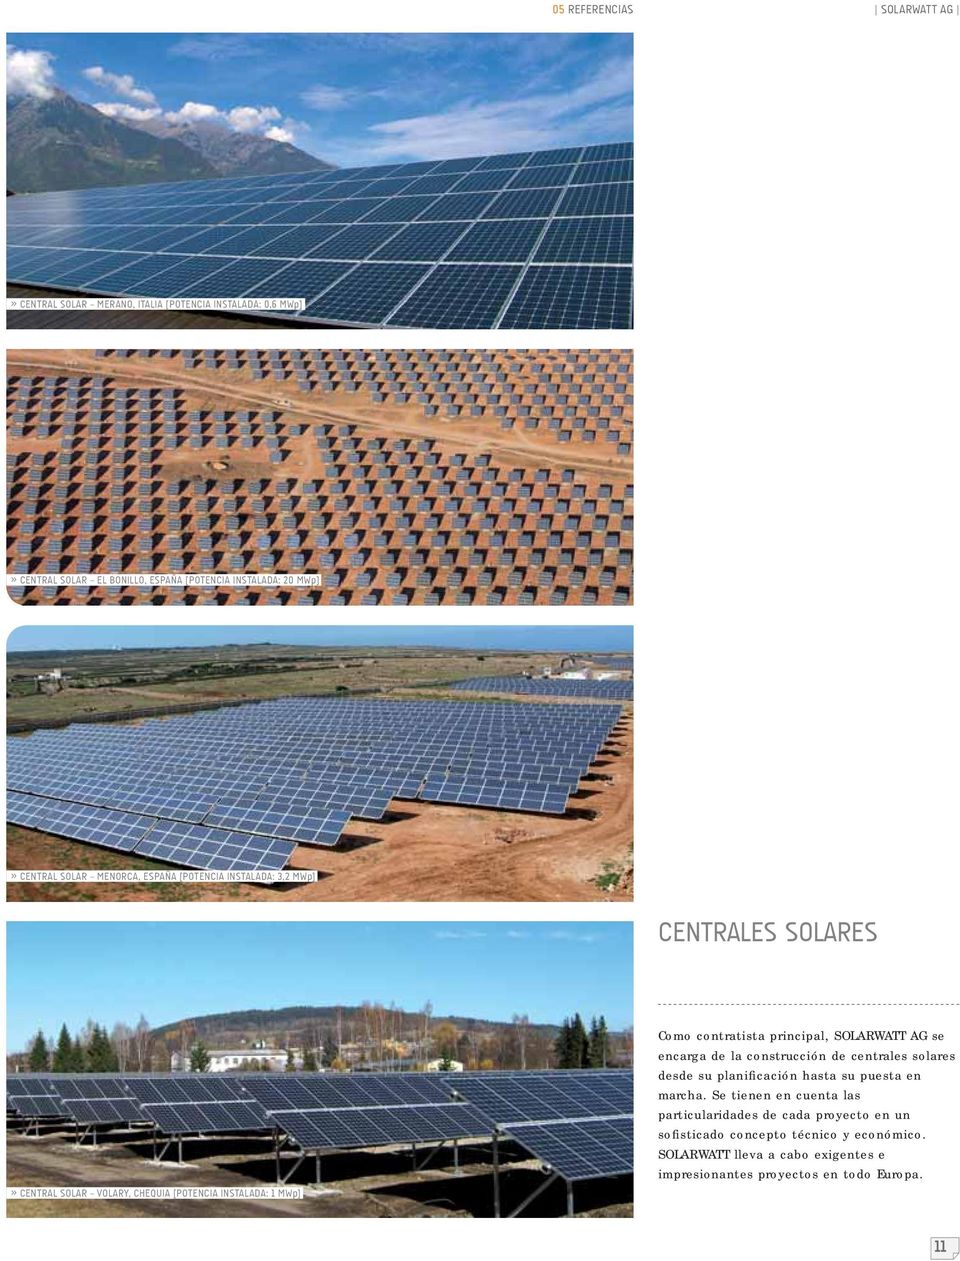 principal, SOLARWATT AG se encarga de la construcción de centrales solares desde su planificación hasta su puesta en marcha.